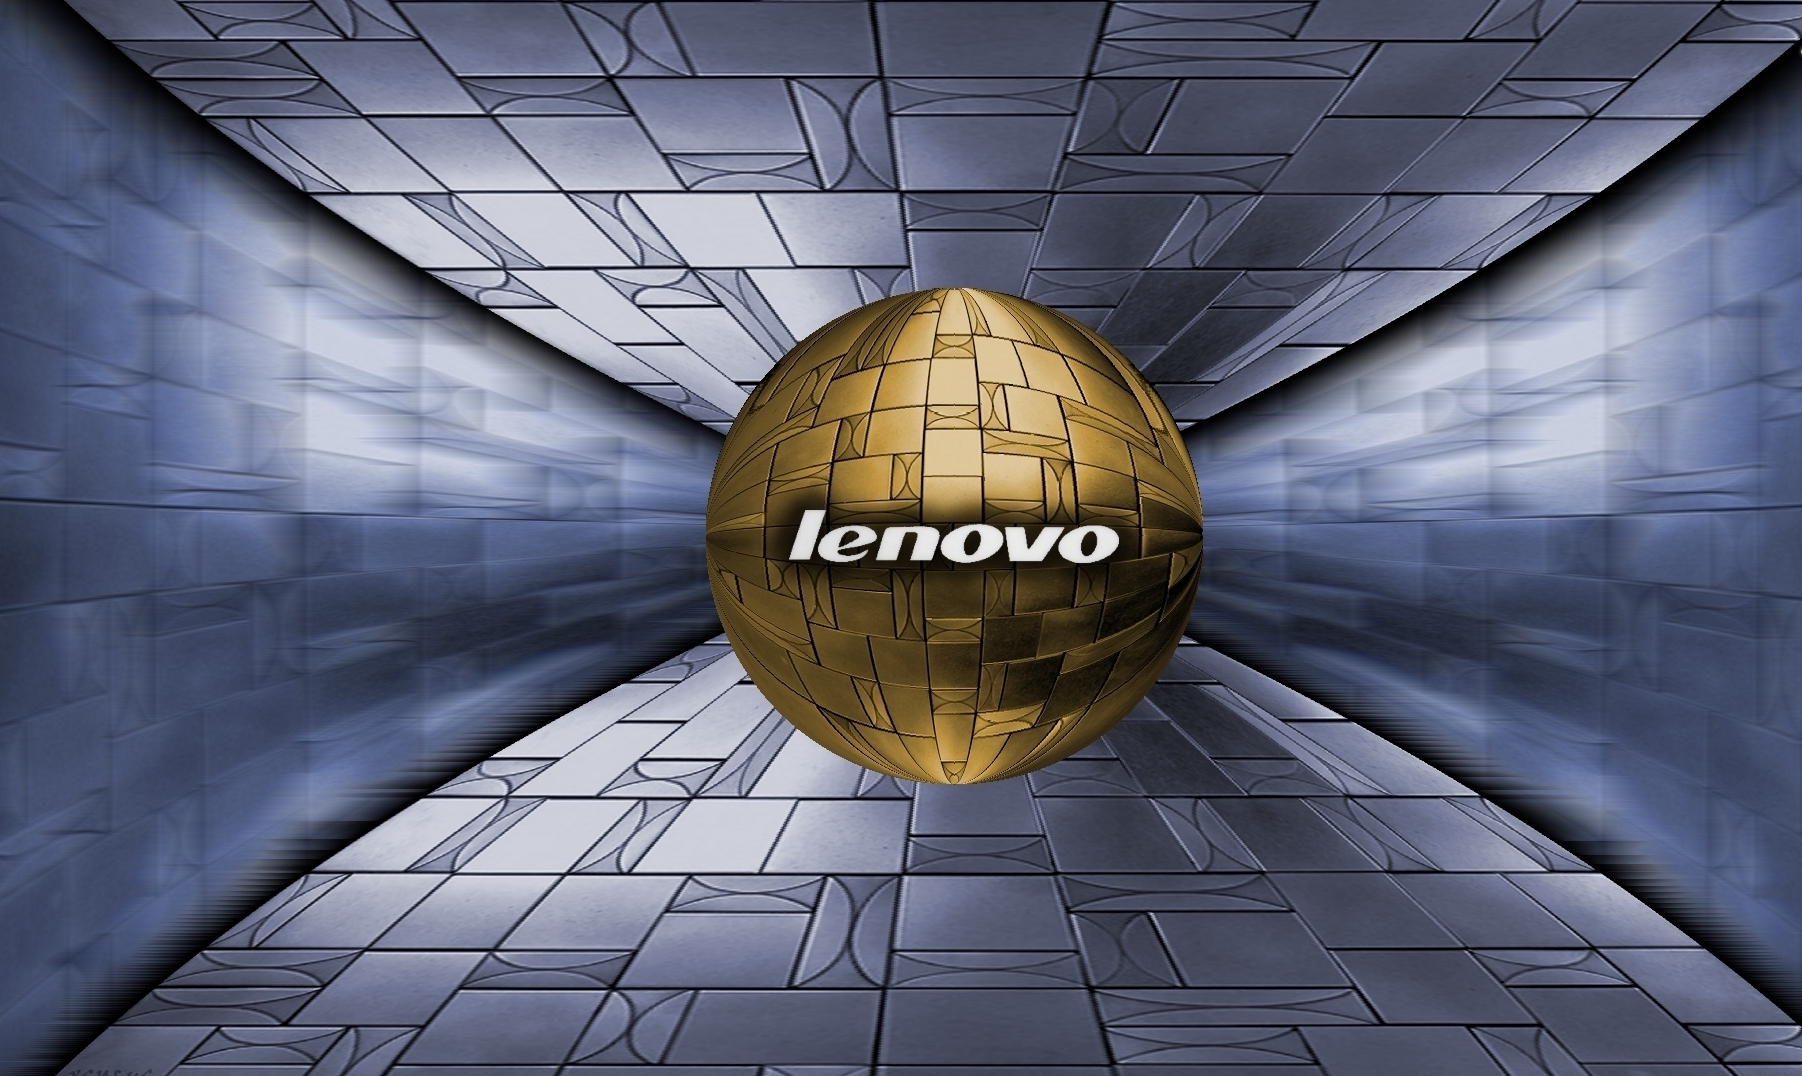 Hình nền Lenovo sẽ đem lại cho bạn sự phong cách và độc đáo đầy sáng tạo. Tự hào khoe với bạn bè về màn hình máy tính của mình với những bức ảnh nền đẹp từ Lenovo. 